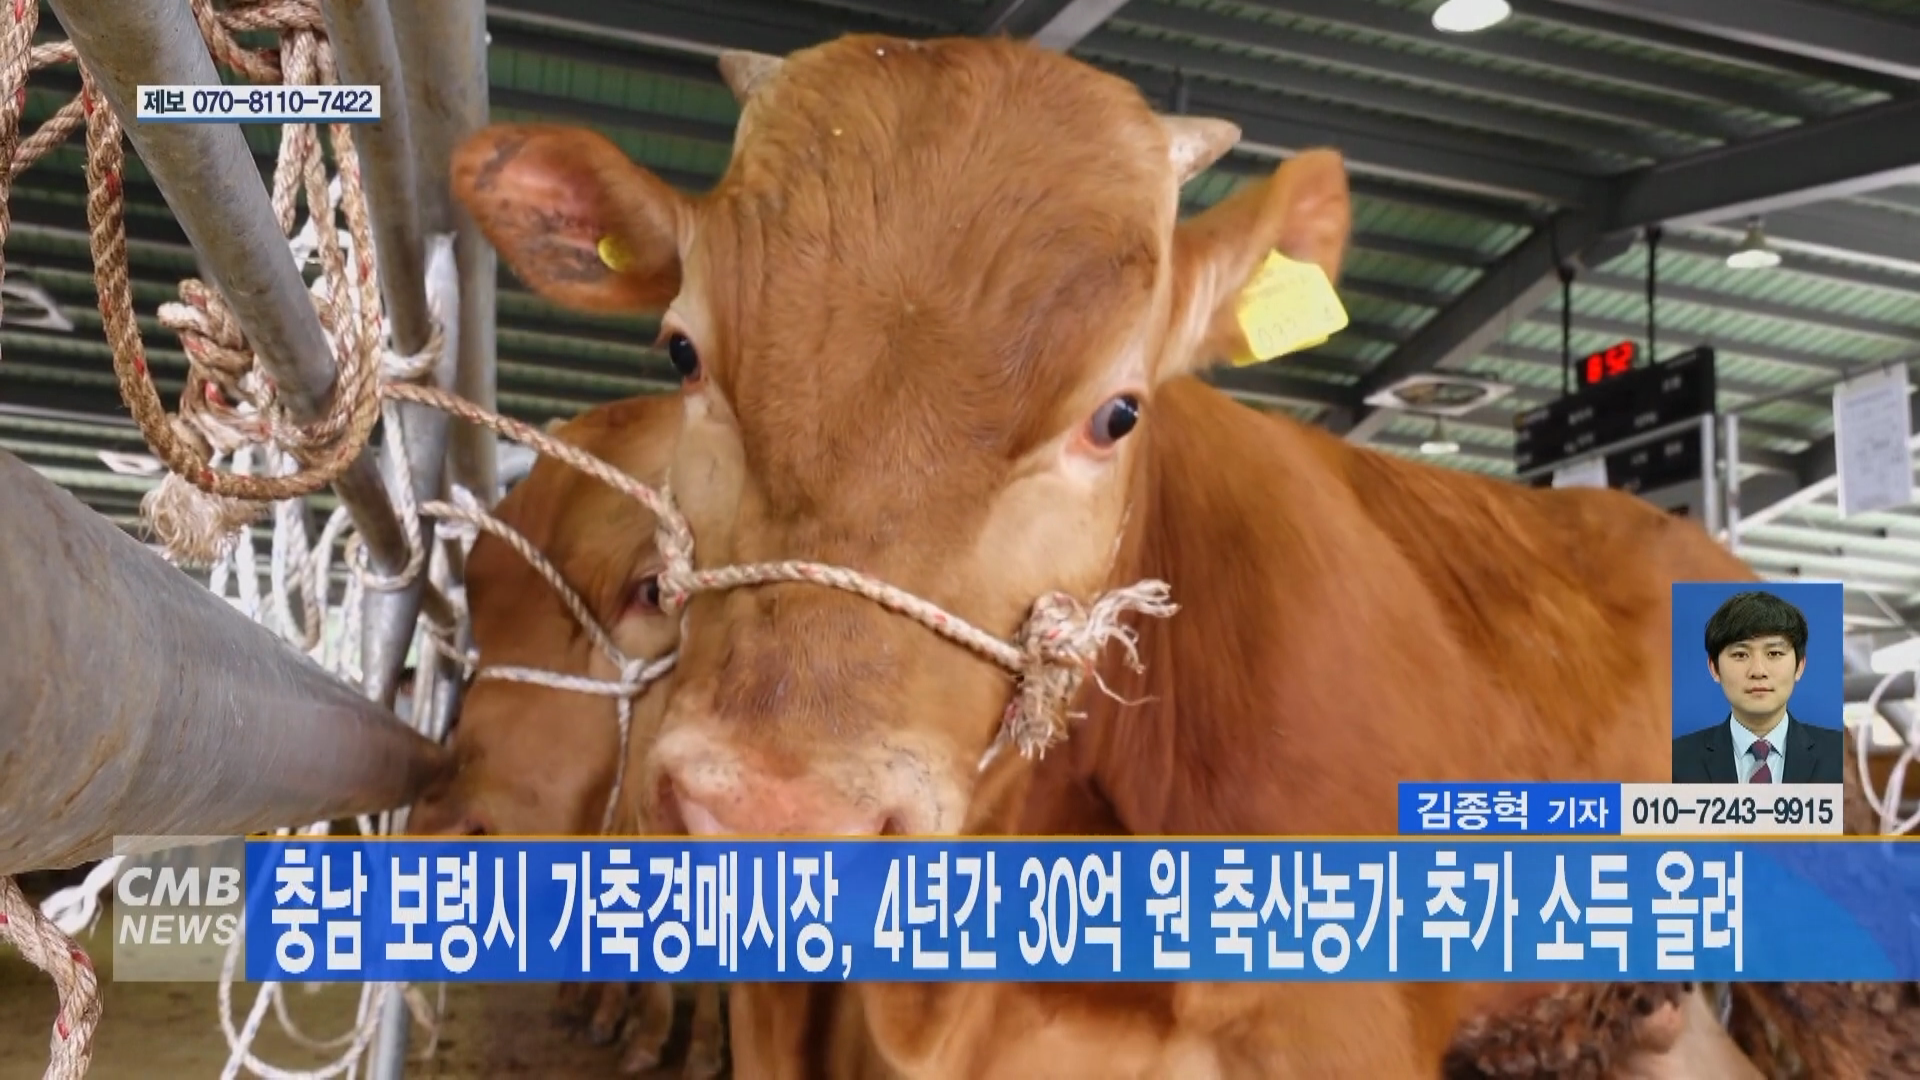 [0120 CMB 뉴스]가축경매시장 지난 4년간 30억 원의 소득